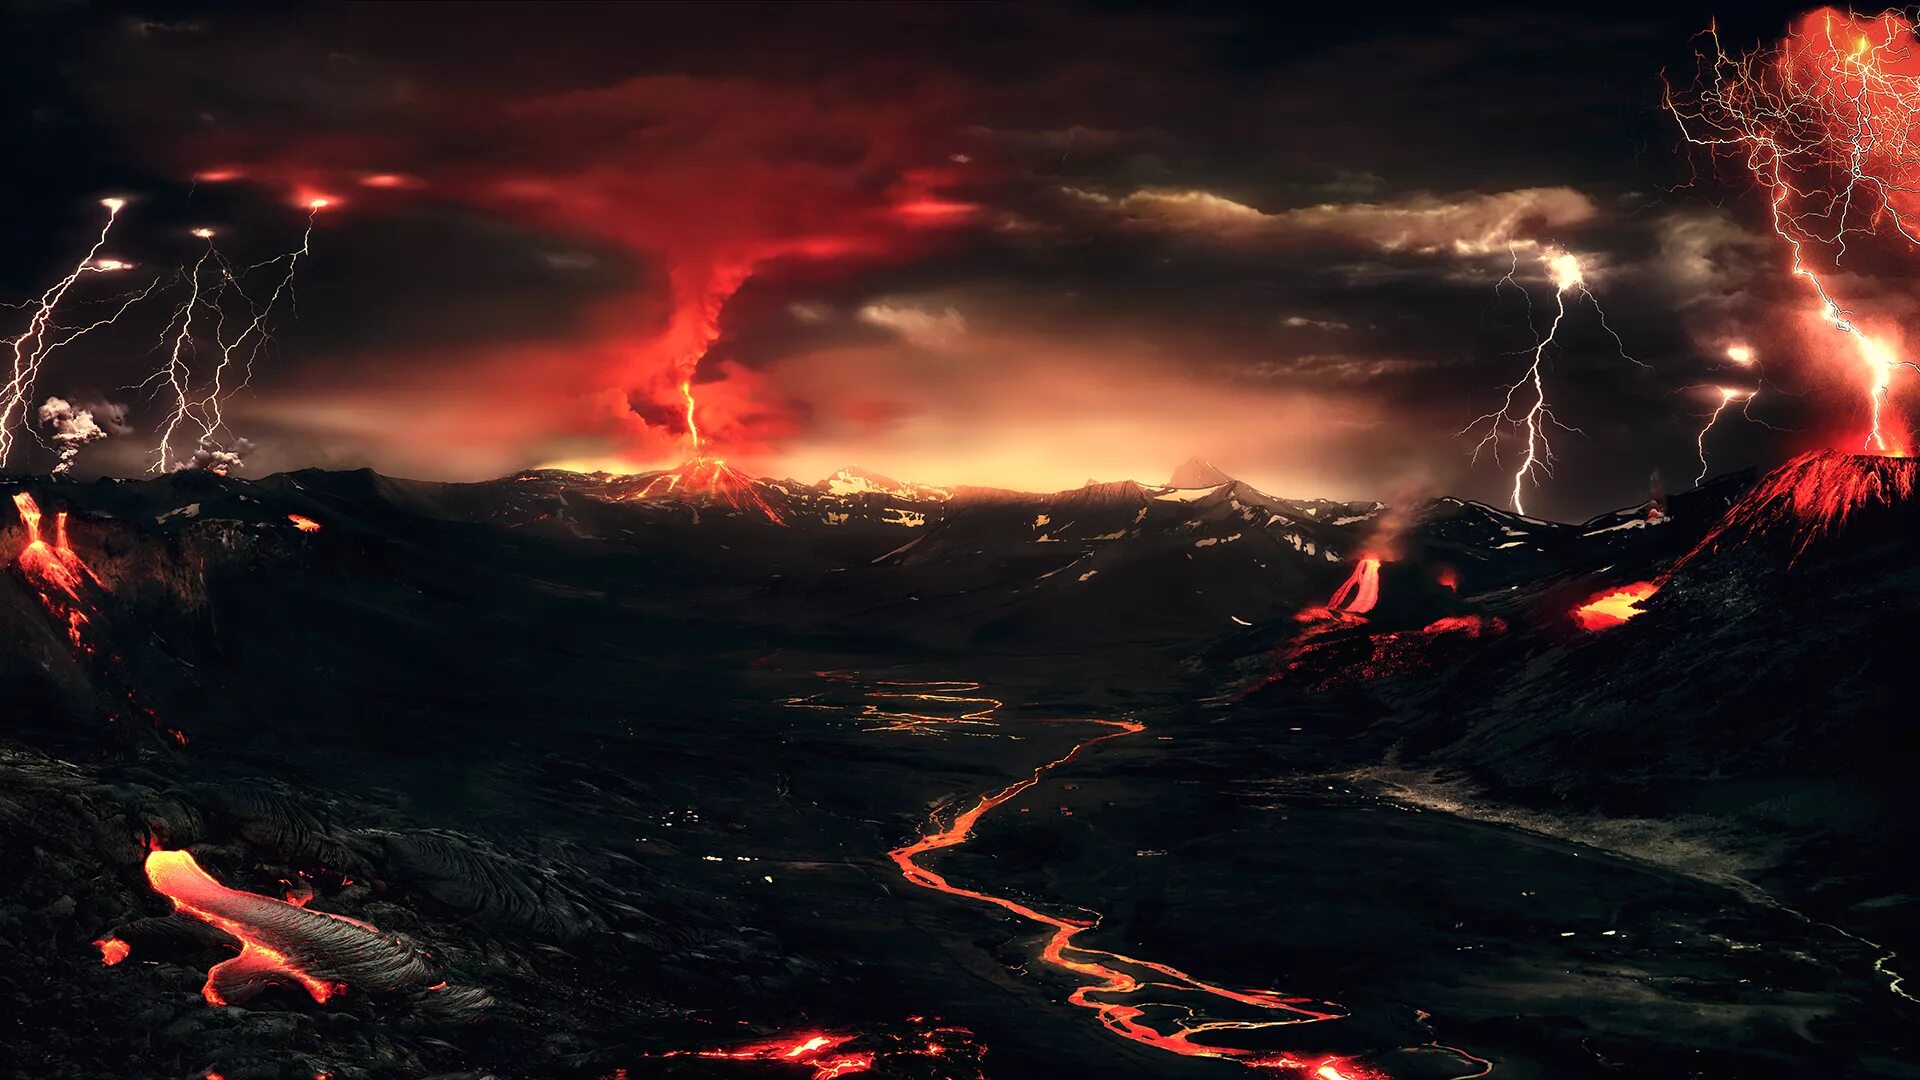 Франциско Негрони гроза вулкан. Извержение вулкана лава. Извержение вулкана Пуйеуэ 2011. Вулканический пейзаж. Земля гроз 2014